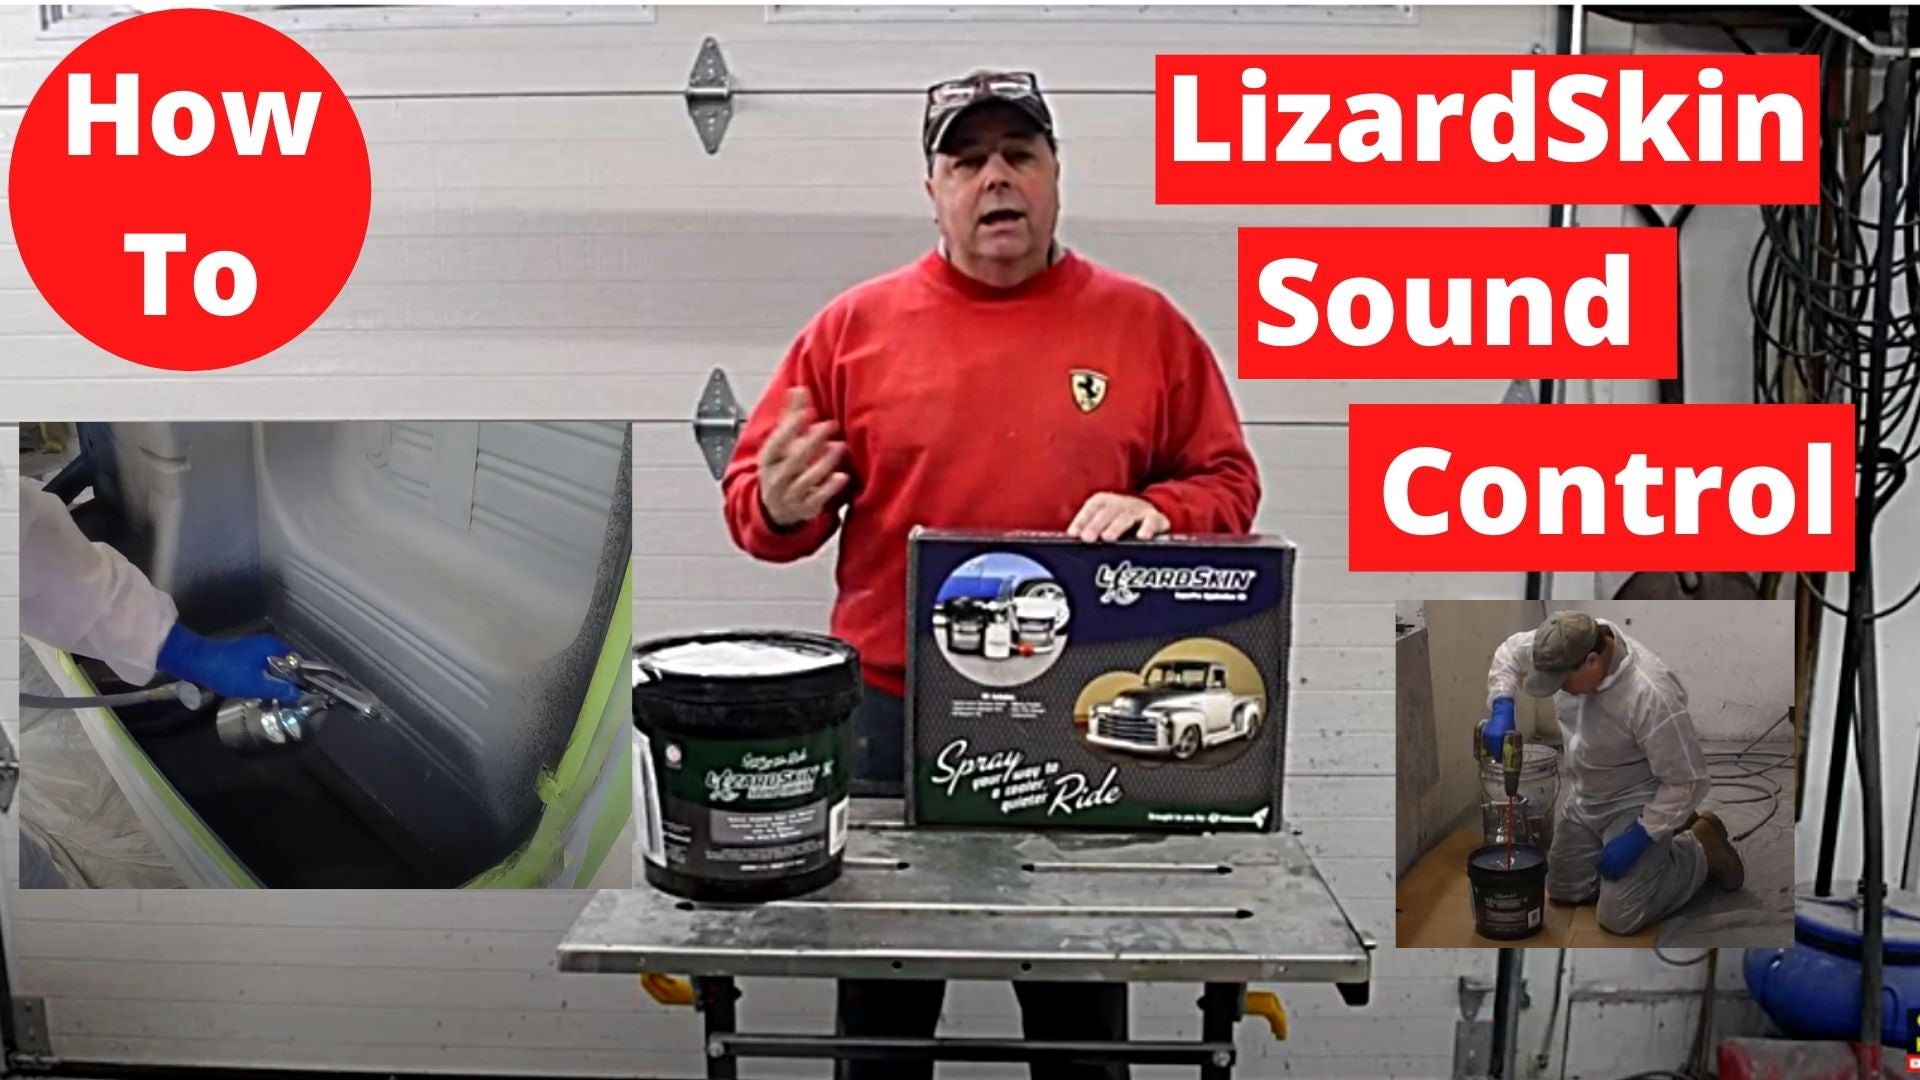 LizardSkin Sound Control Step By Step Insallation & Review Does LizardSkin work?